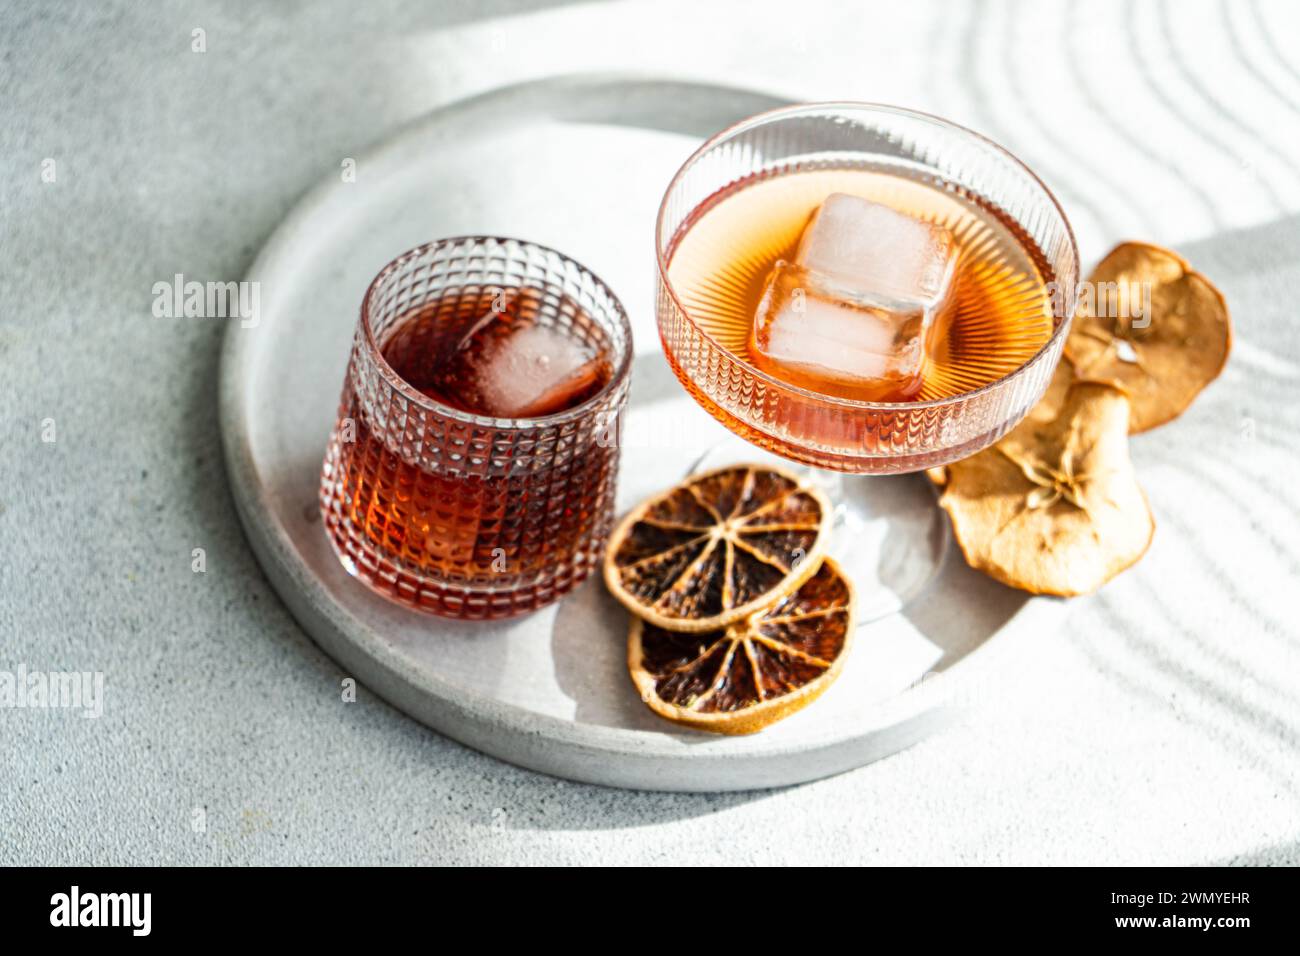 Eine gut beleuchtete, elegante Präsentation verschiedener alkoholischer Getränke in gerippten Gläsern, mit Eiswürfeln und getrockneten Zitrusfrüchten auf einem runden Tablett Stockfoto